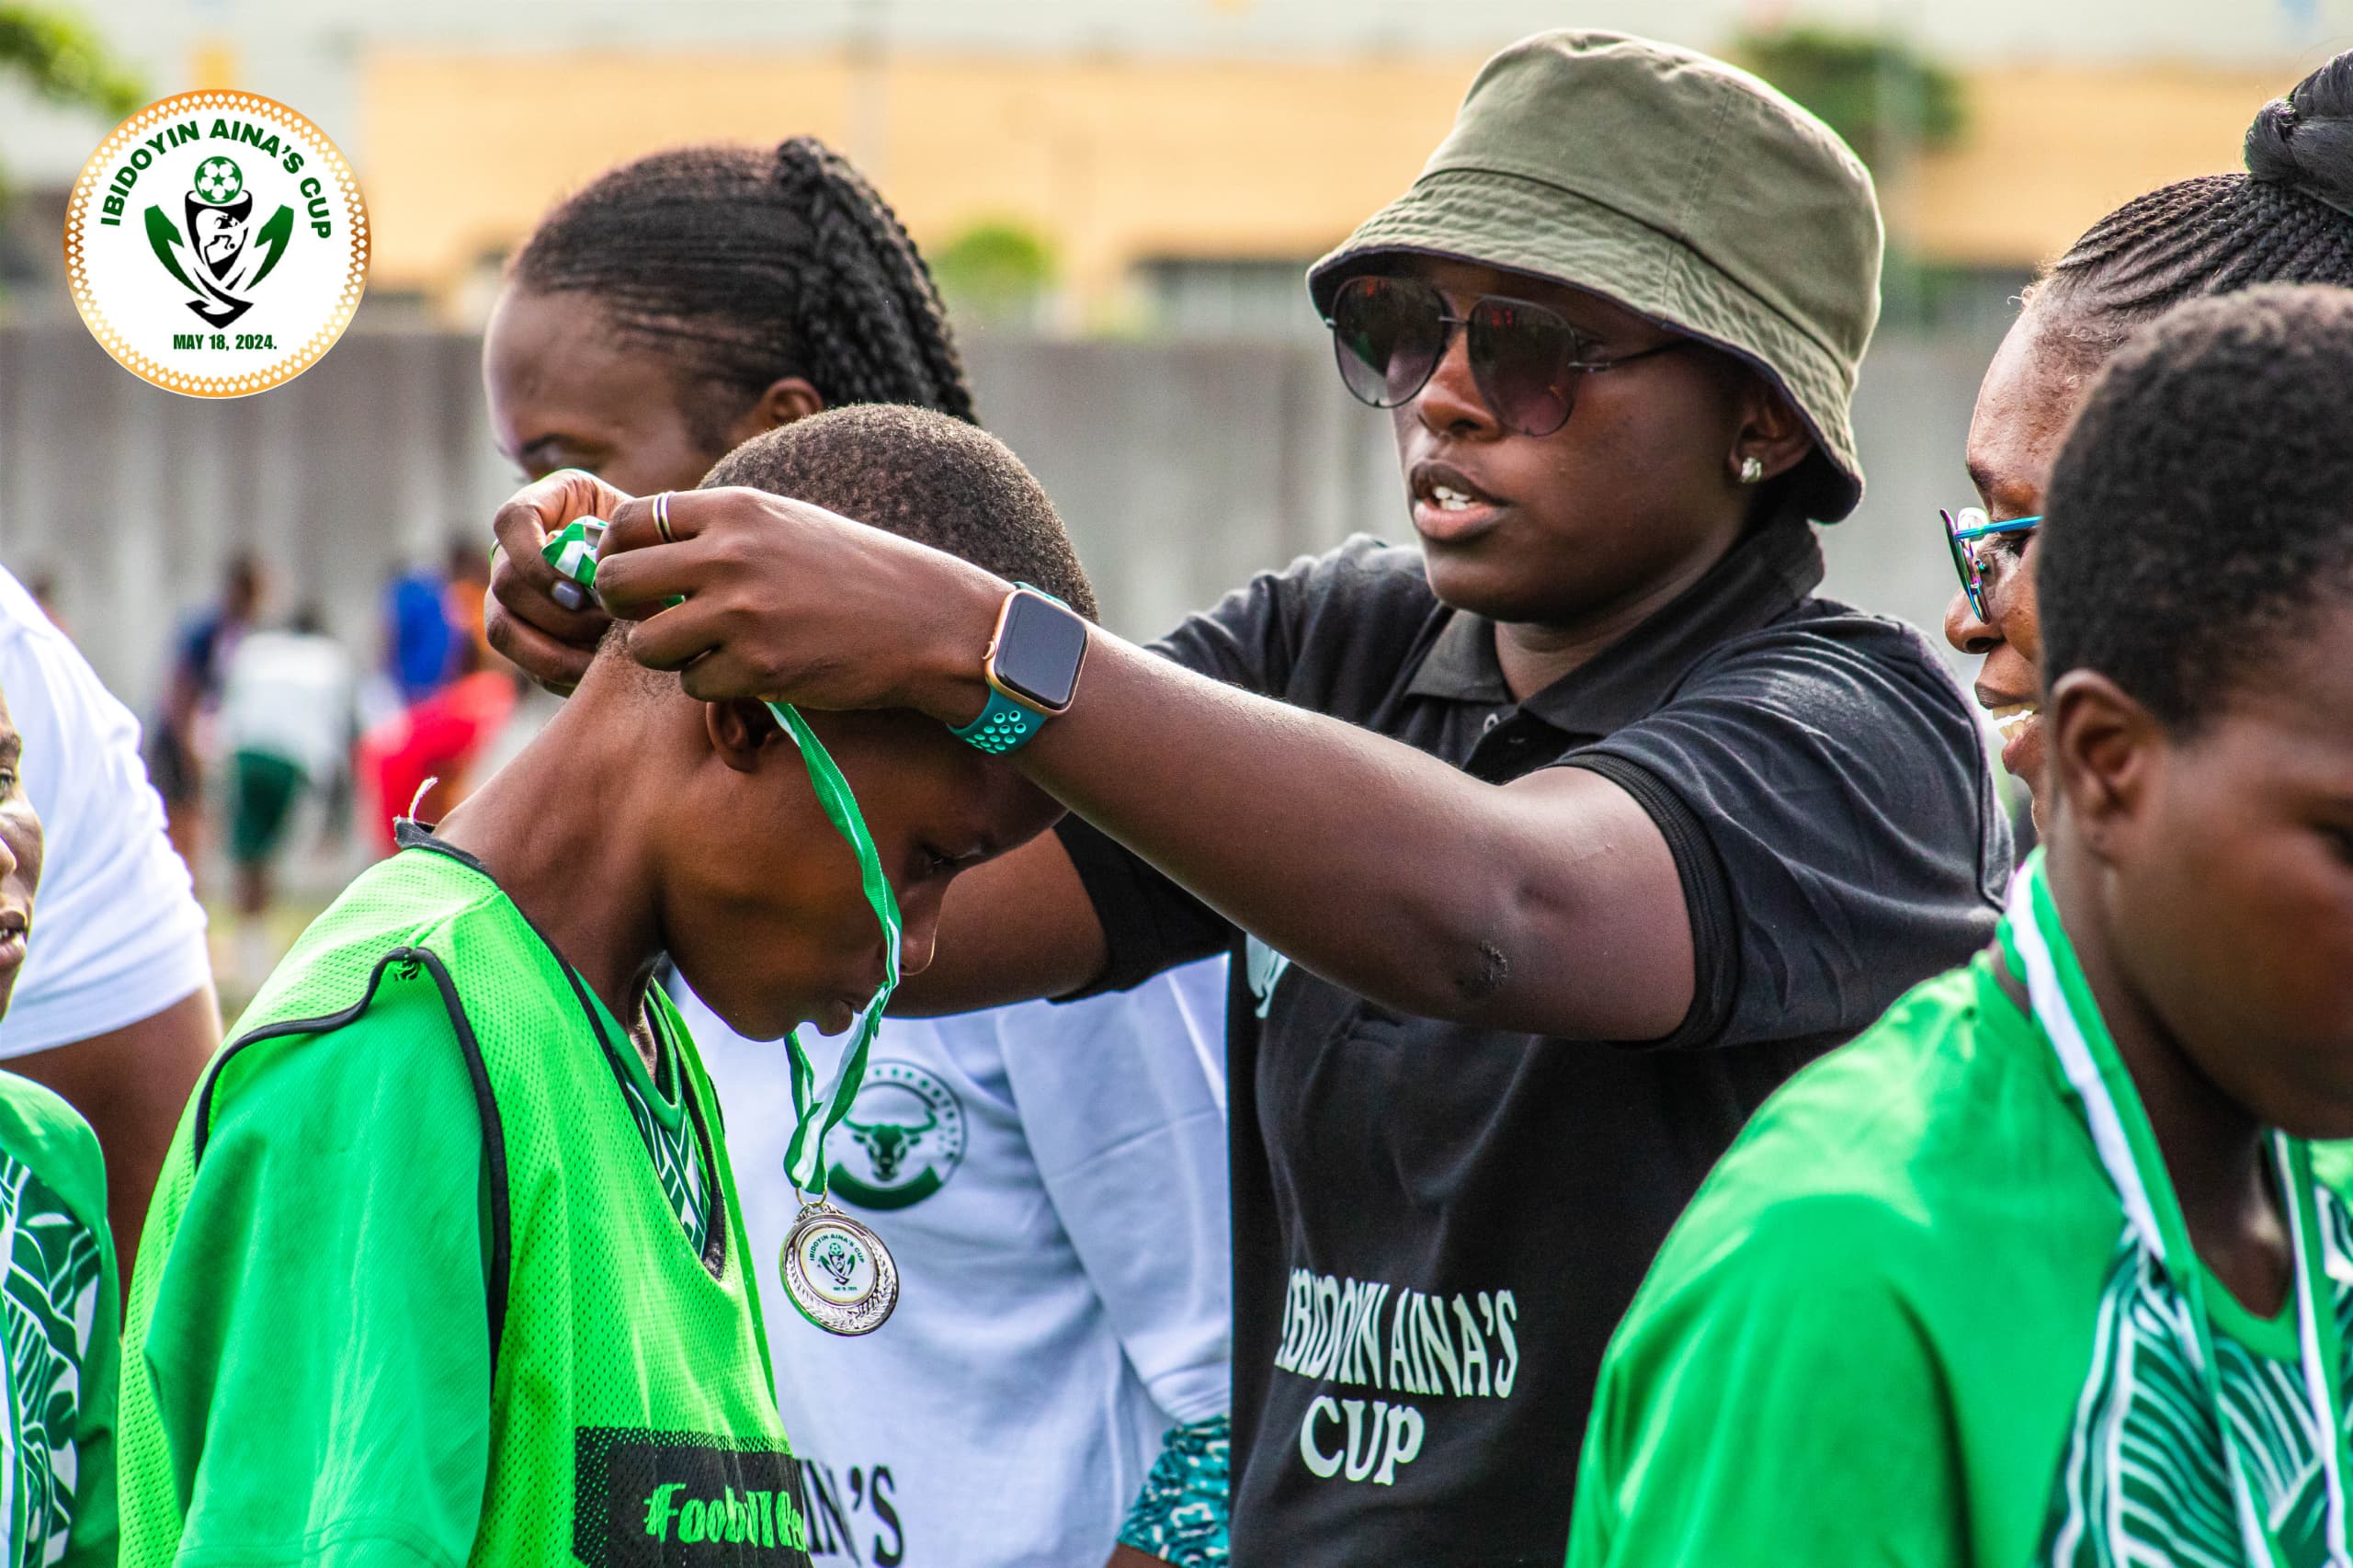 Wazbak Quéens Wins Maiden Ibidoyin Aina Cup